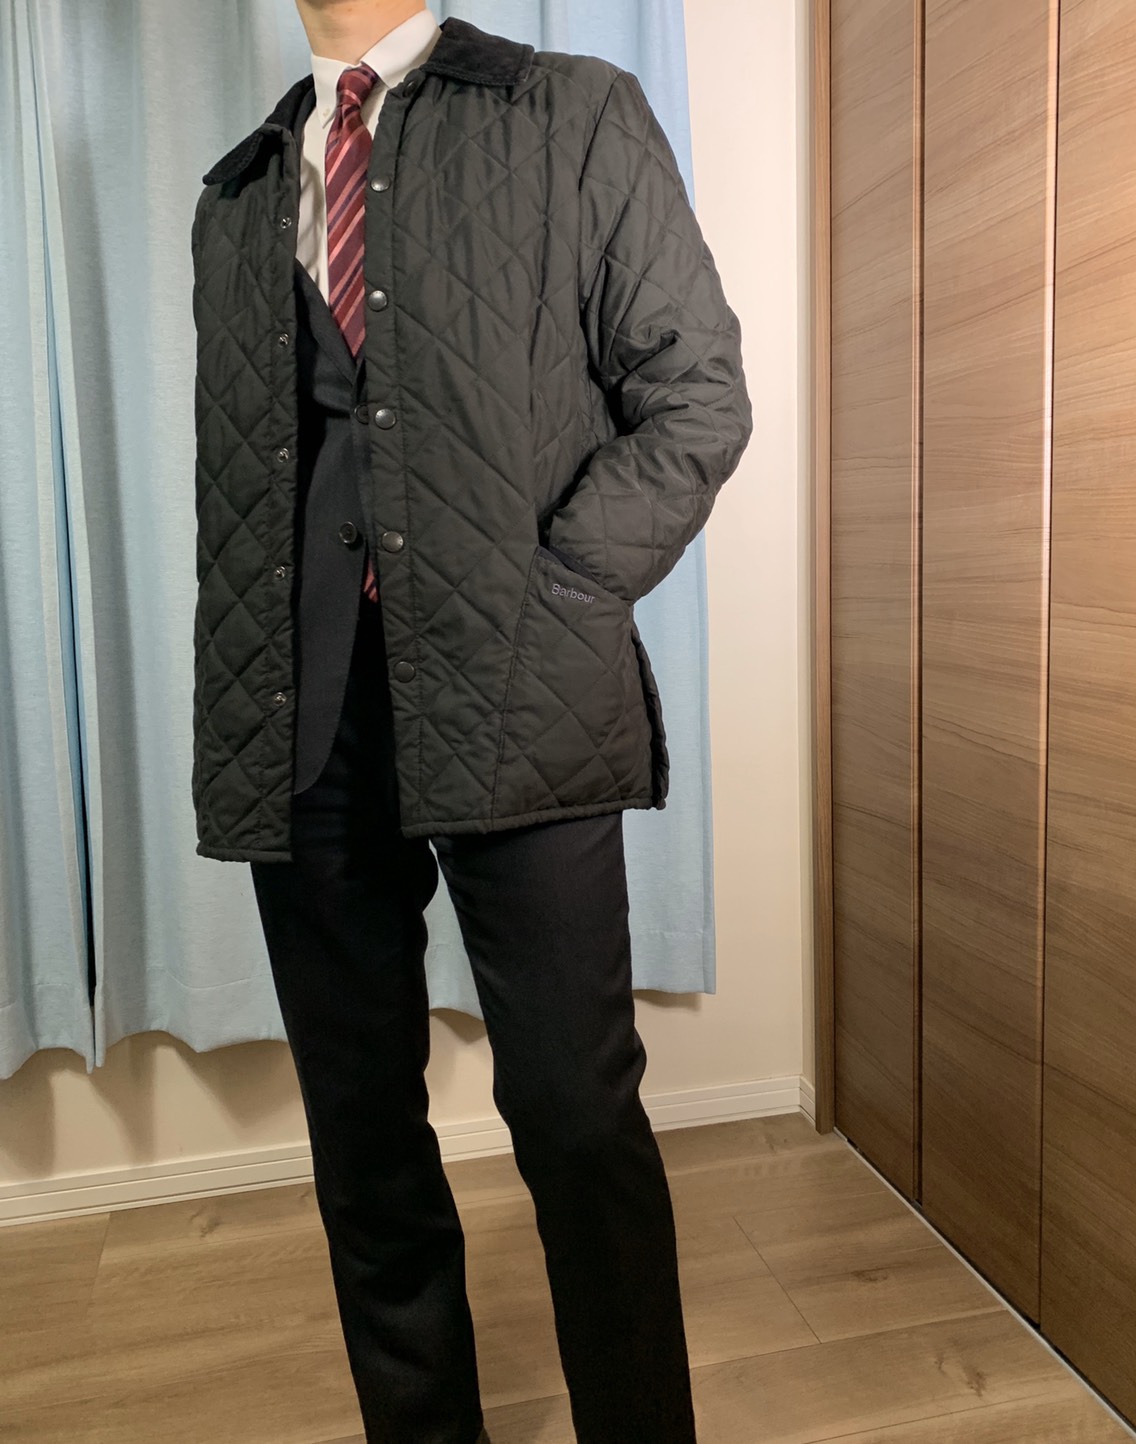 冬の通勤にバブアーのキルティングジャケットがおすすめ【barbour】 | こだわる男の"モノ"ブログ